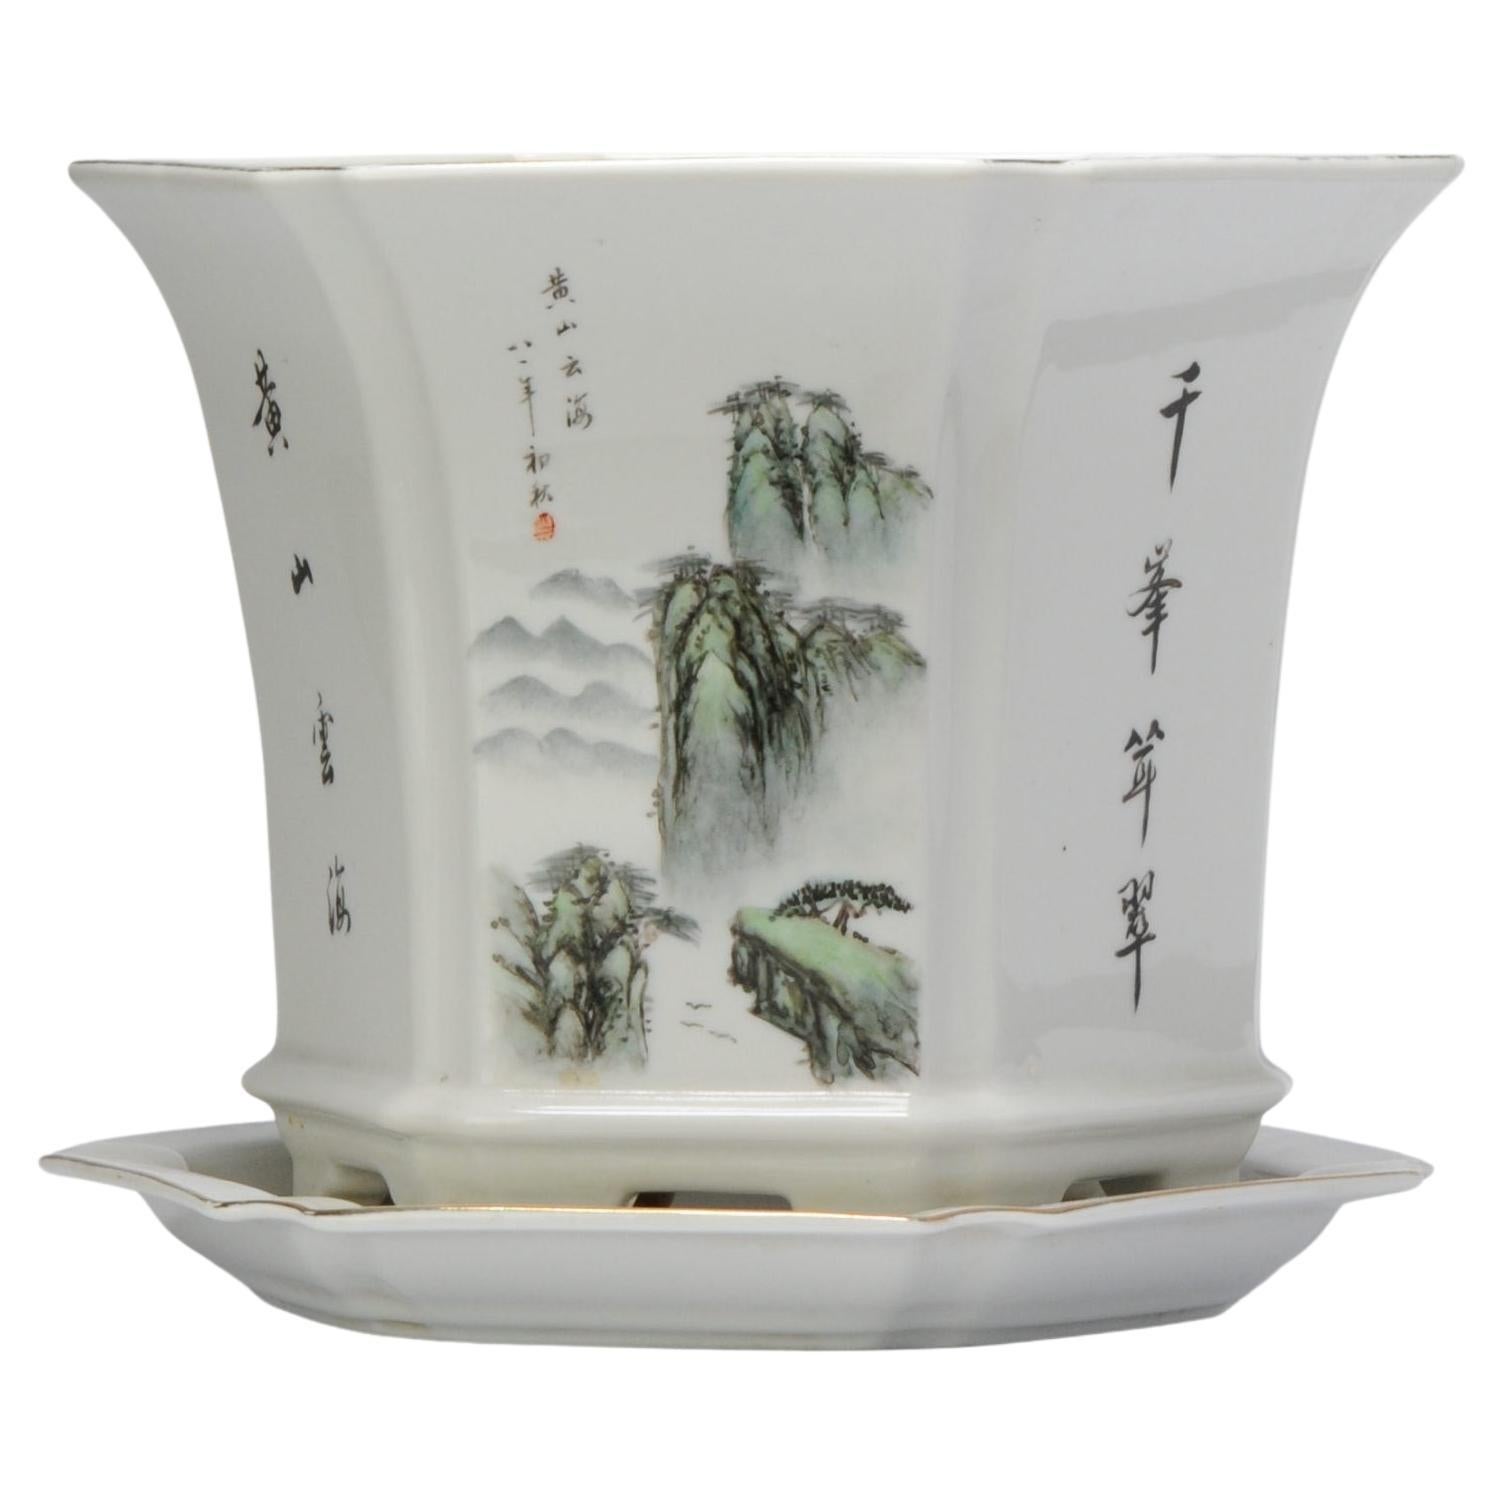 Rare Vintage 1981 Chinese Porcelain Proc Landscape Jardiniere Planter China For Sale